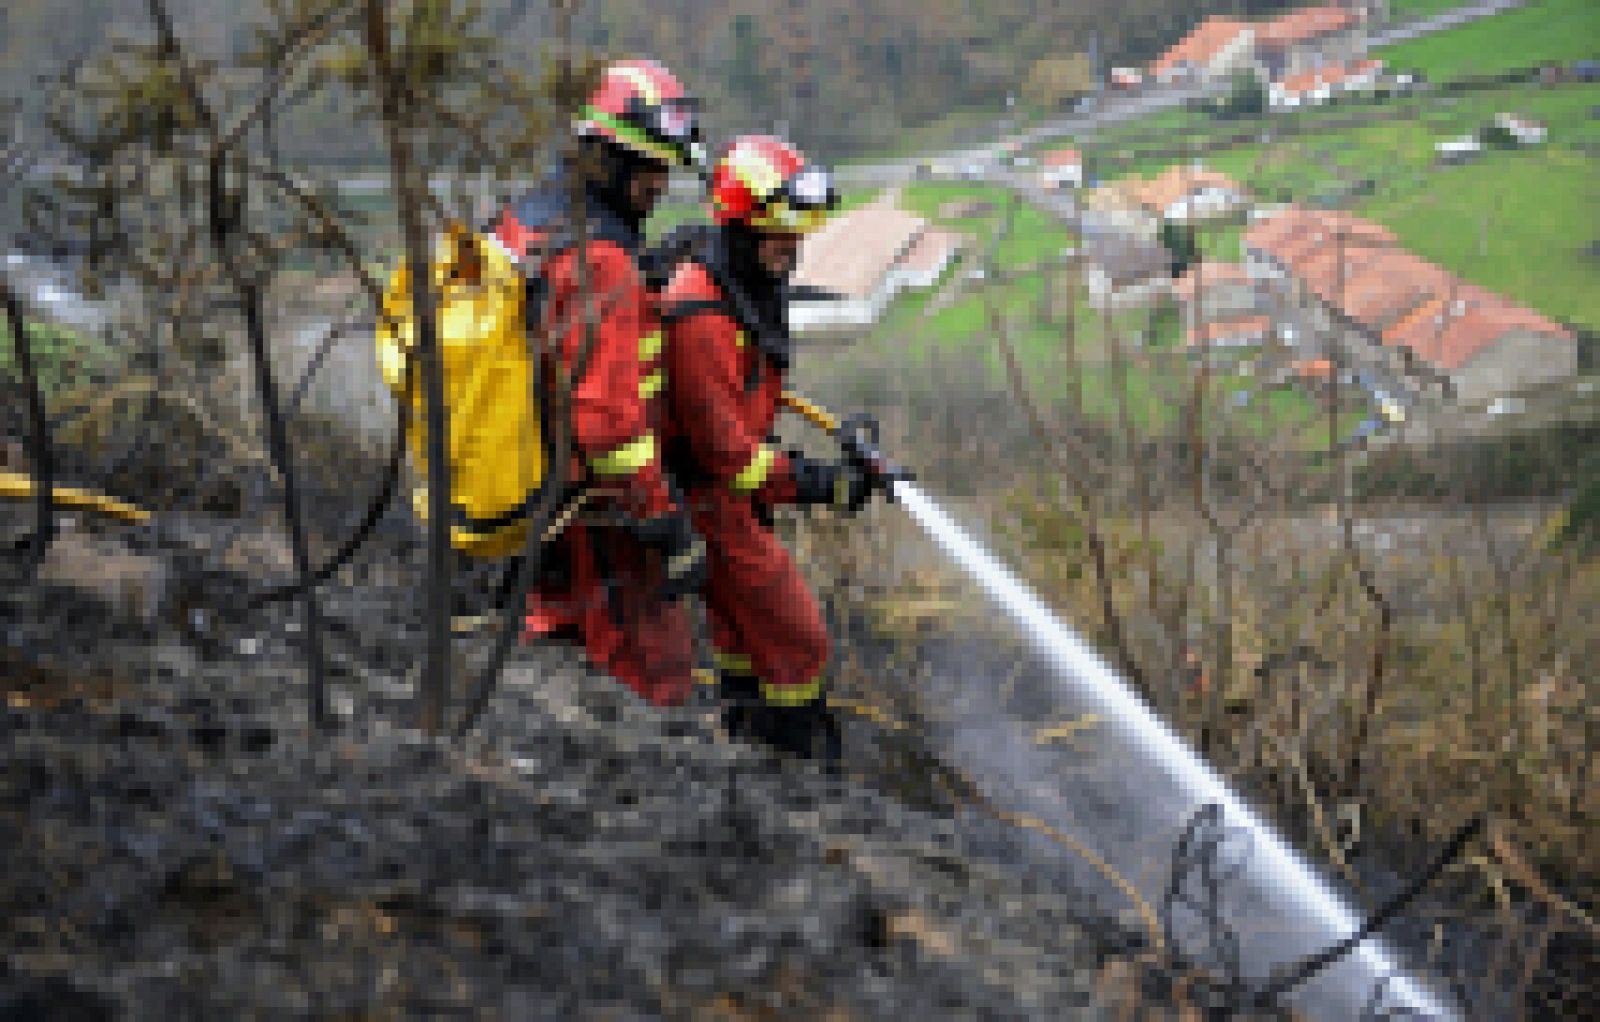 Casi 400 focos de incendios declarados en el norte de la península. Solo en Asturias se han registrado 150. Se investiga si algunos de ellos han sido provocados. Se han podido controlar 34 de estos incendios y en la actualidad quedan 102.